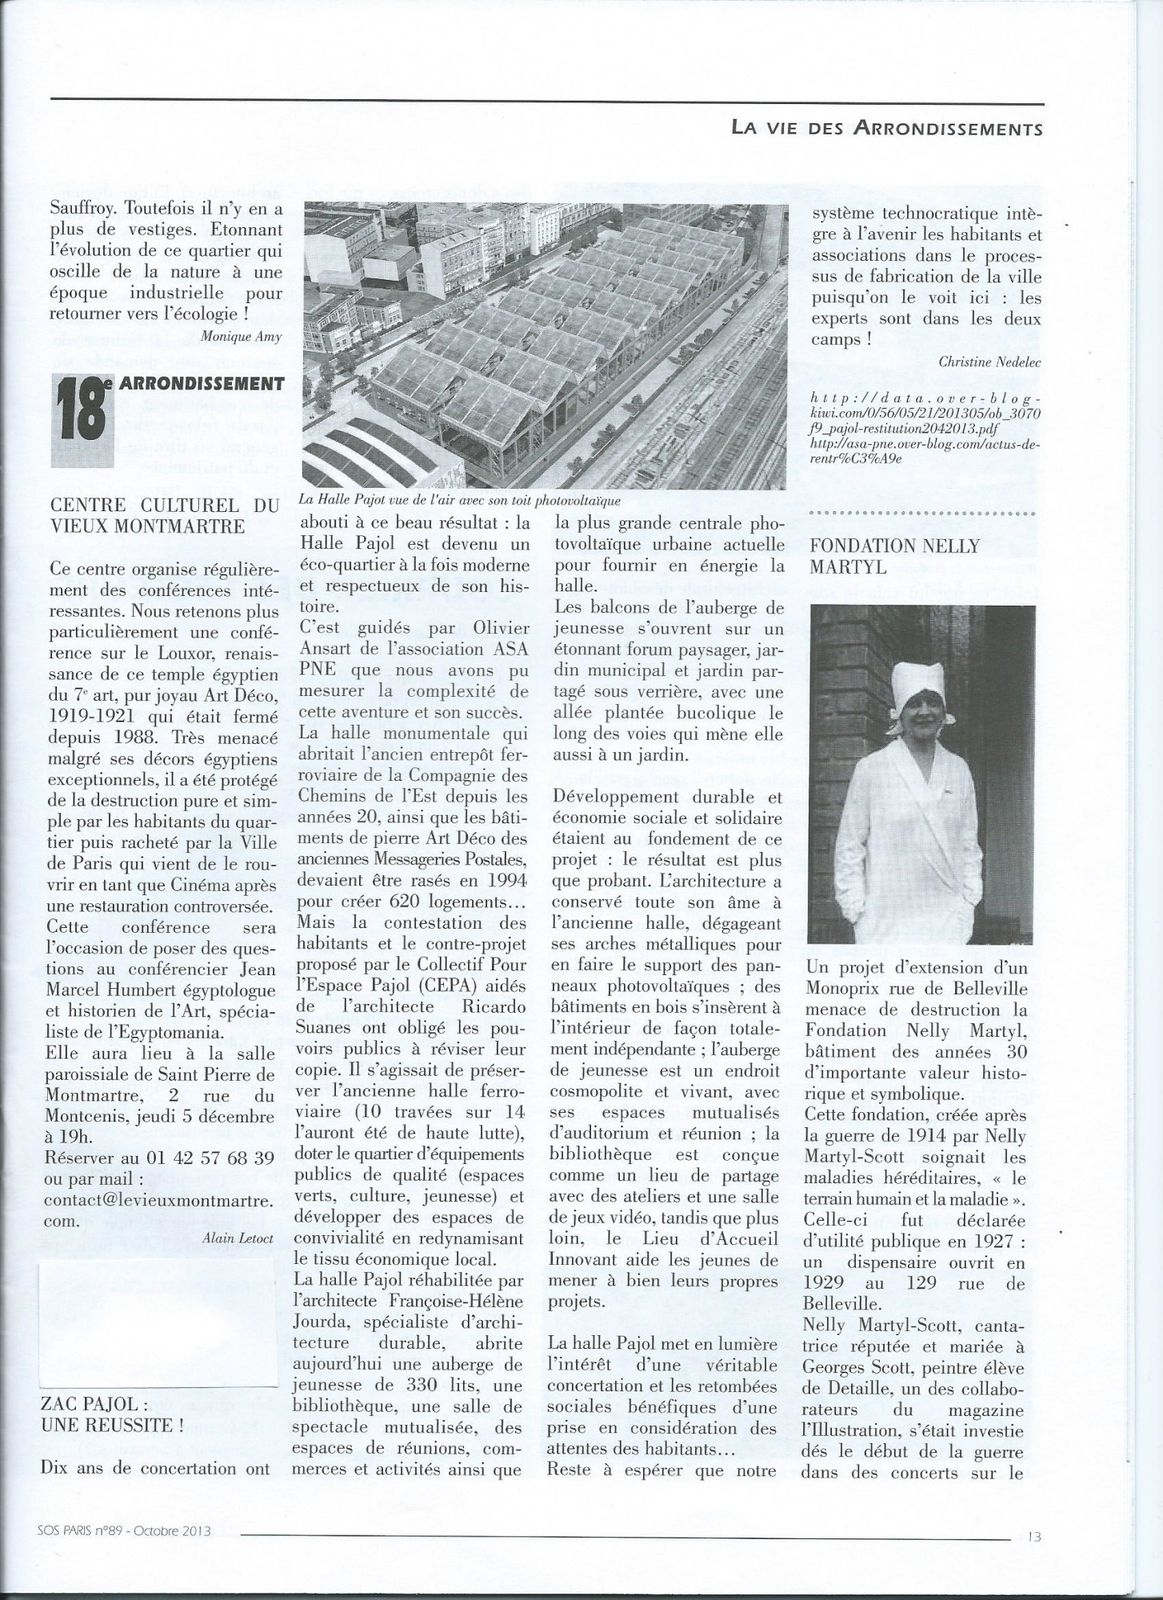 Pajol : article de SOS PARIS dans le bulletin d'octobre 2013